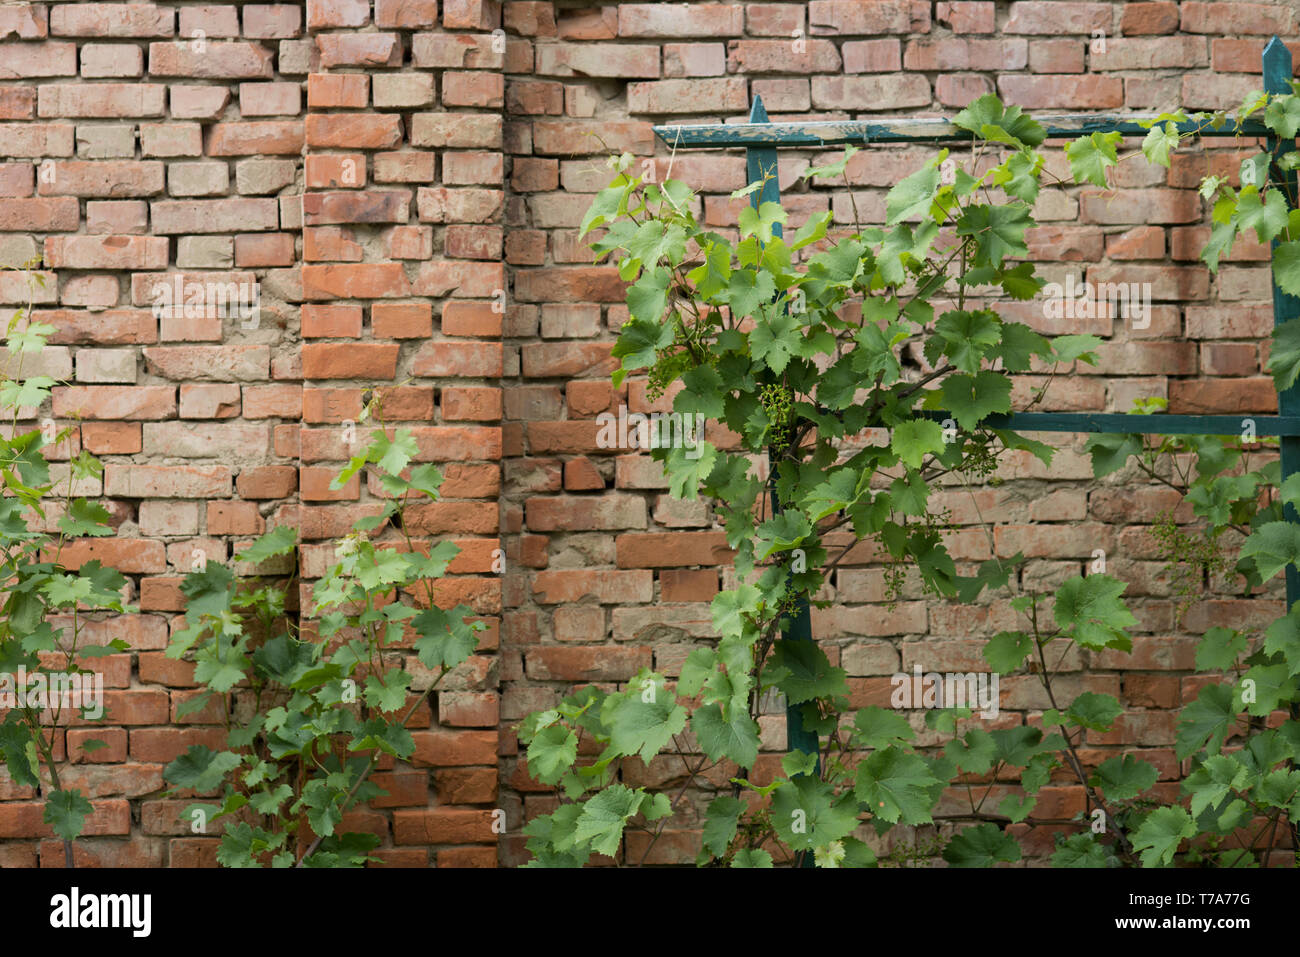 Weinpflanze mit grünen Blättern auf Red brick wall Hintergrund  Stockfotografie - Alamy